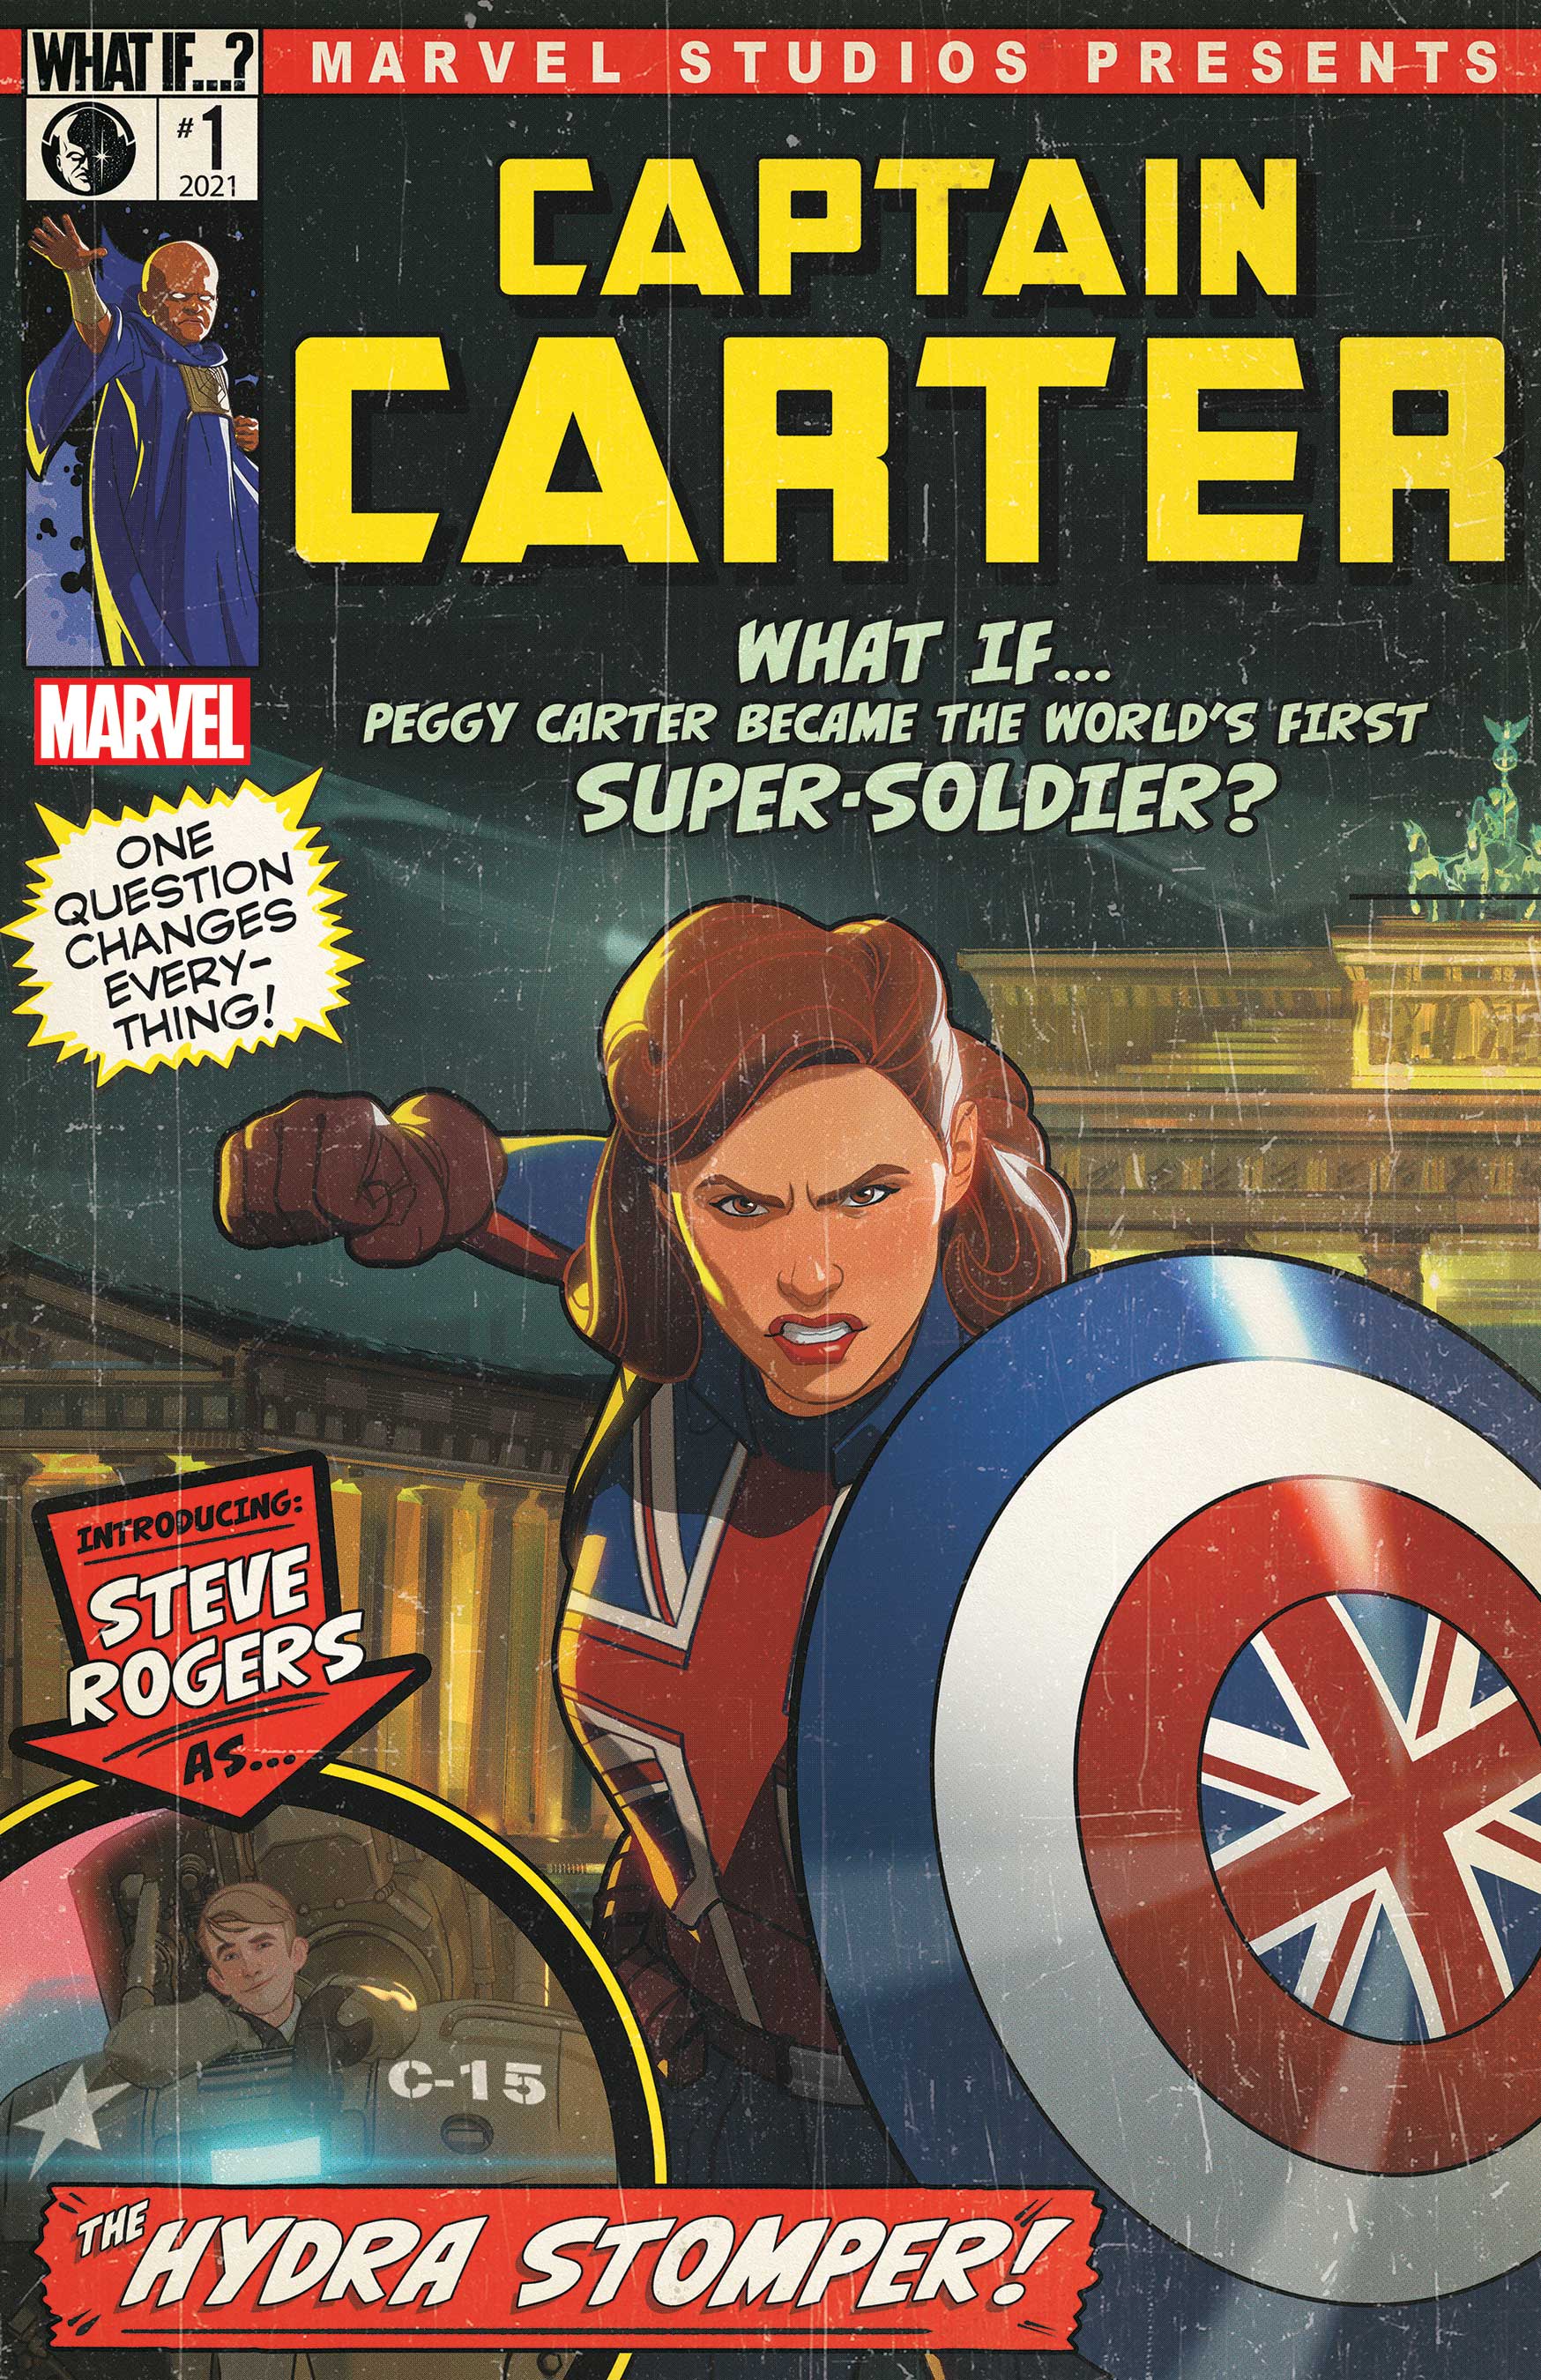 Captain Carter #1 cover